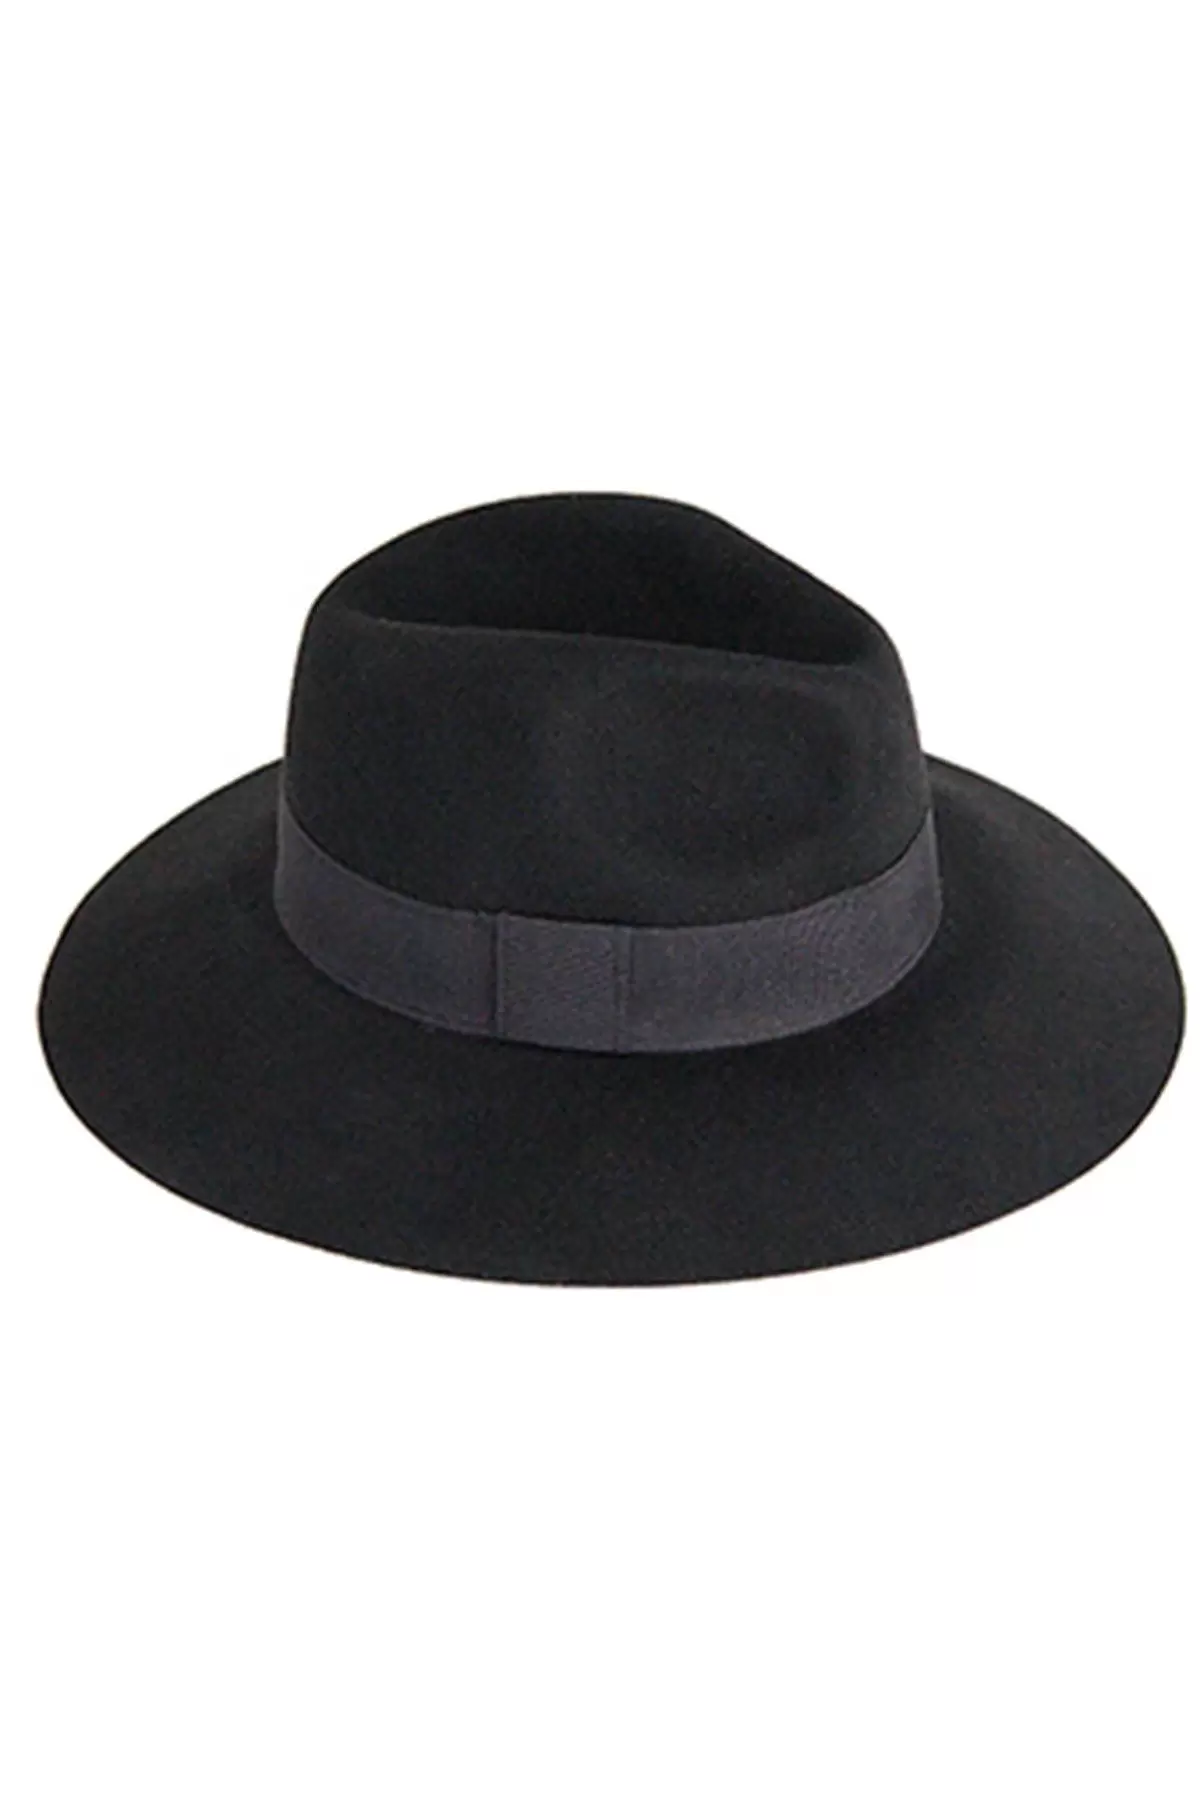 Geniş Kenarlı Kadın Kaşe Şapka Siyah 5747